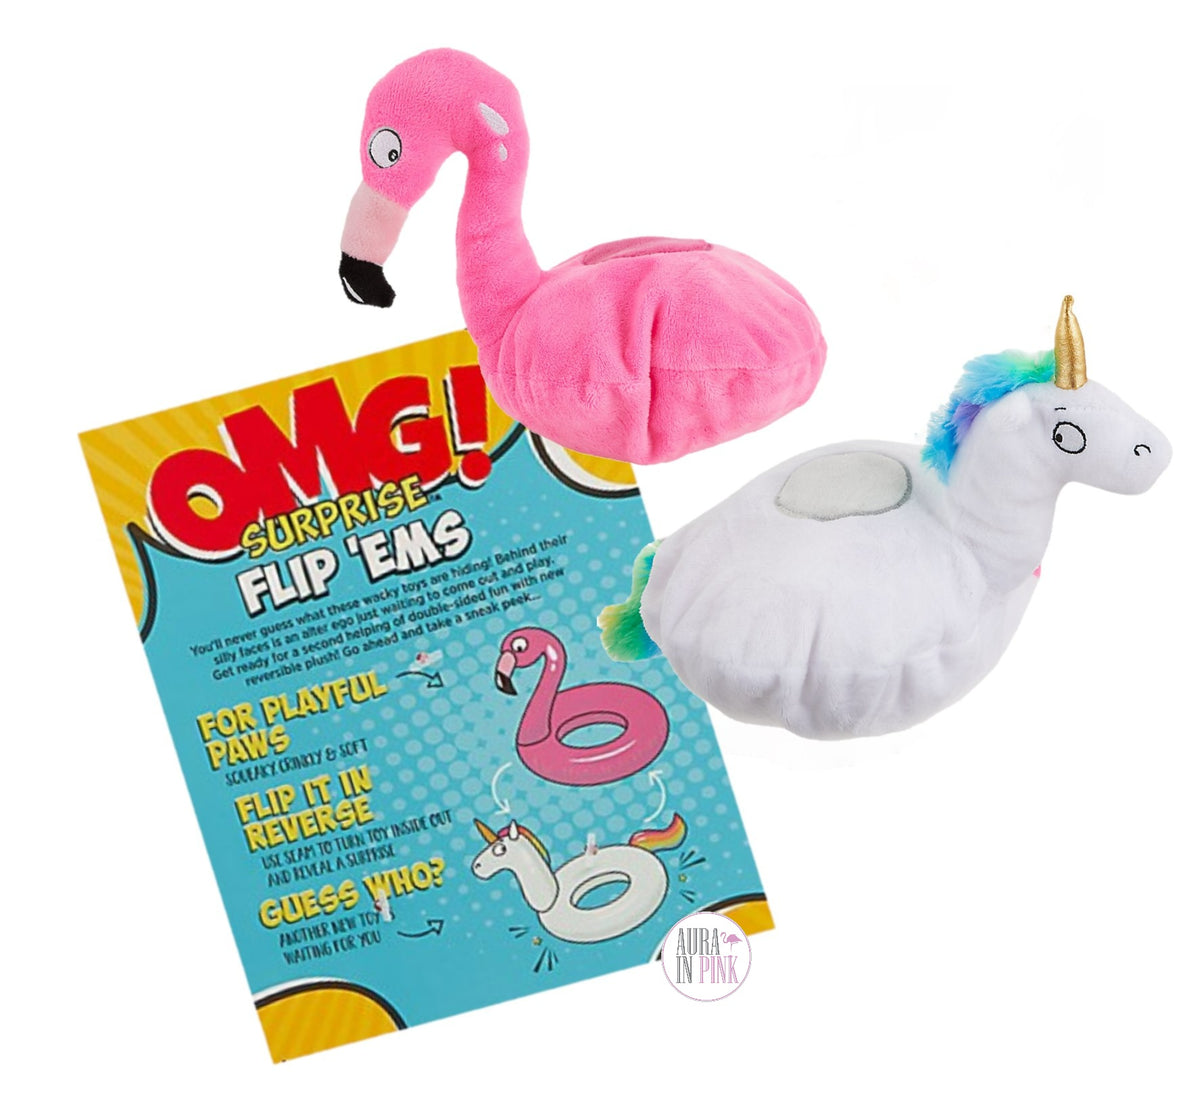 jellydog toy Jellydog Toy Flamingo Party Favors, 16 PCS Reusable